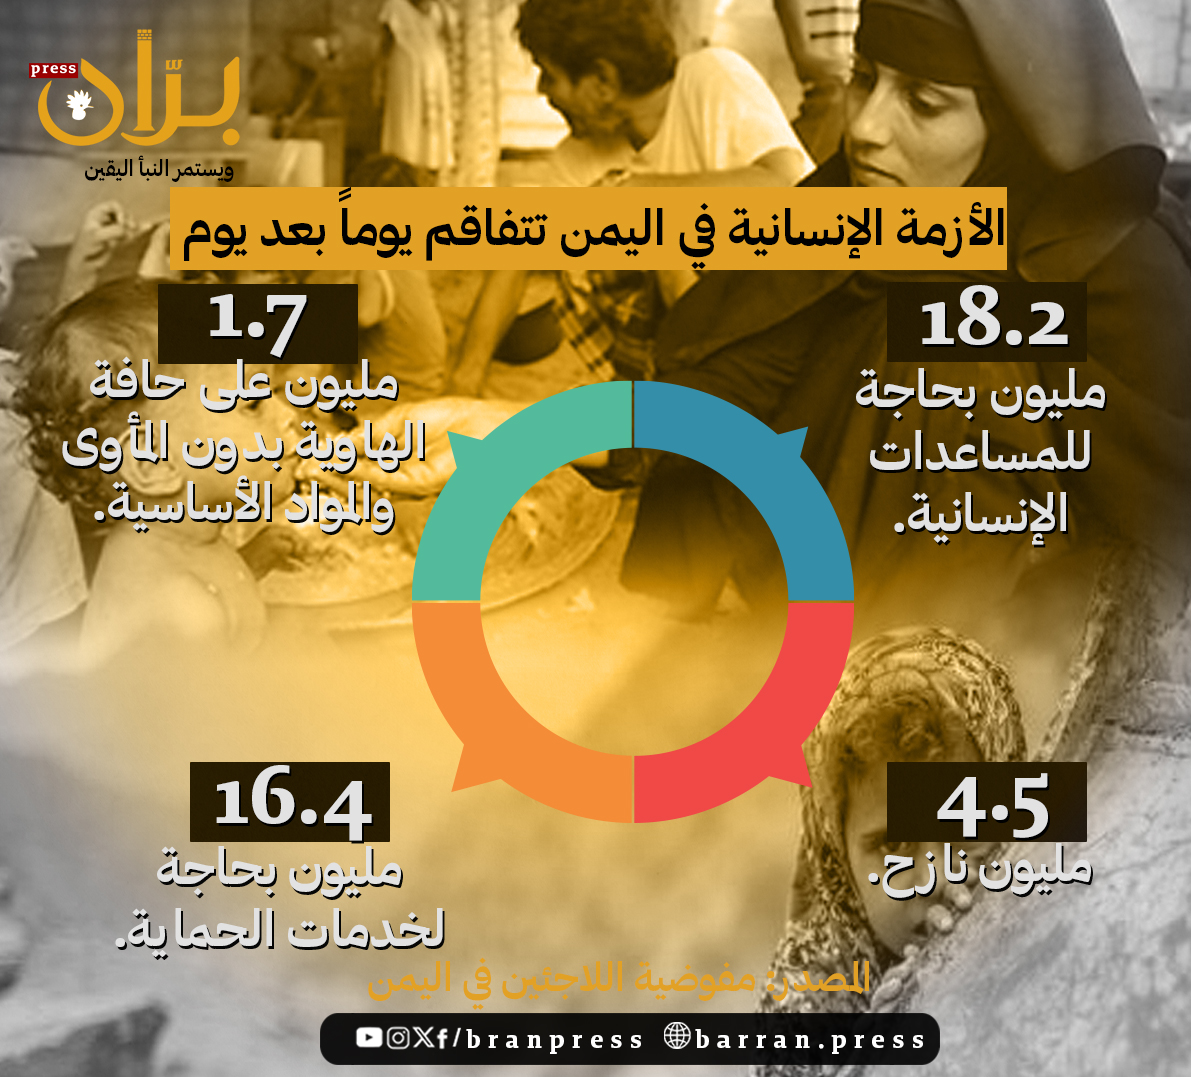 بالأرقام.. الأزمة الإنسانية في اليمن تتفاقم يوما بعد يوم (إنفوجرافيك)